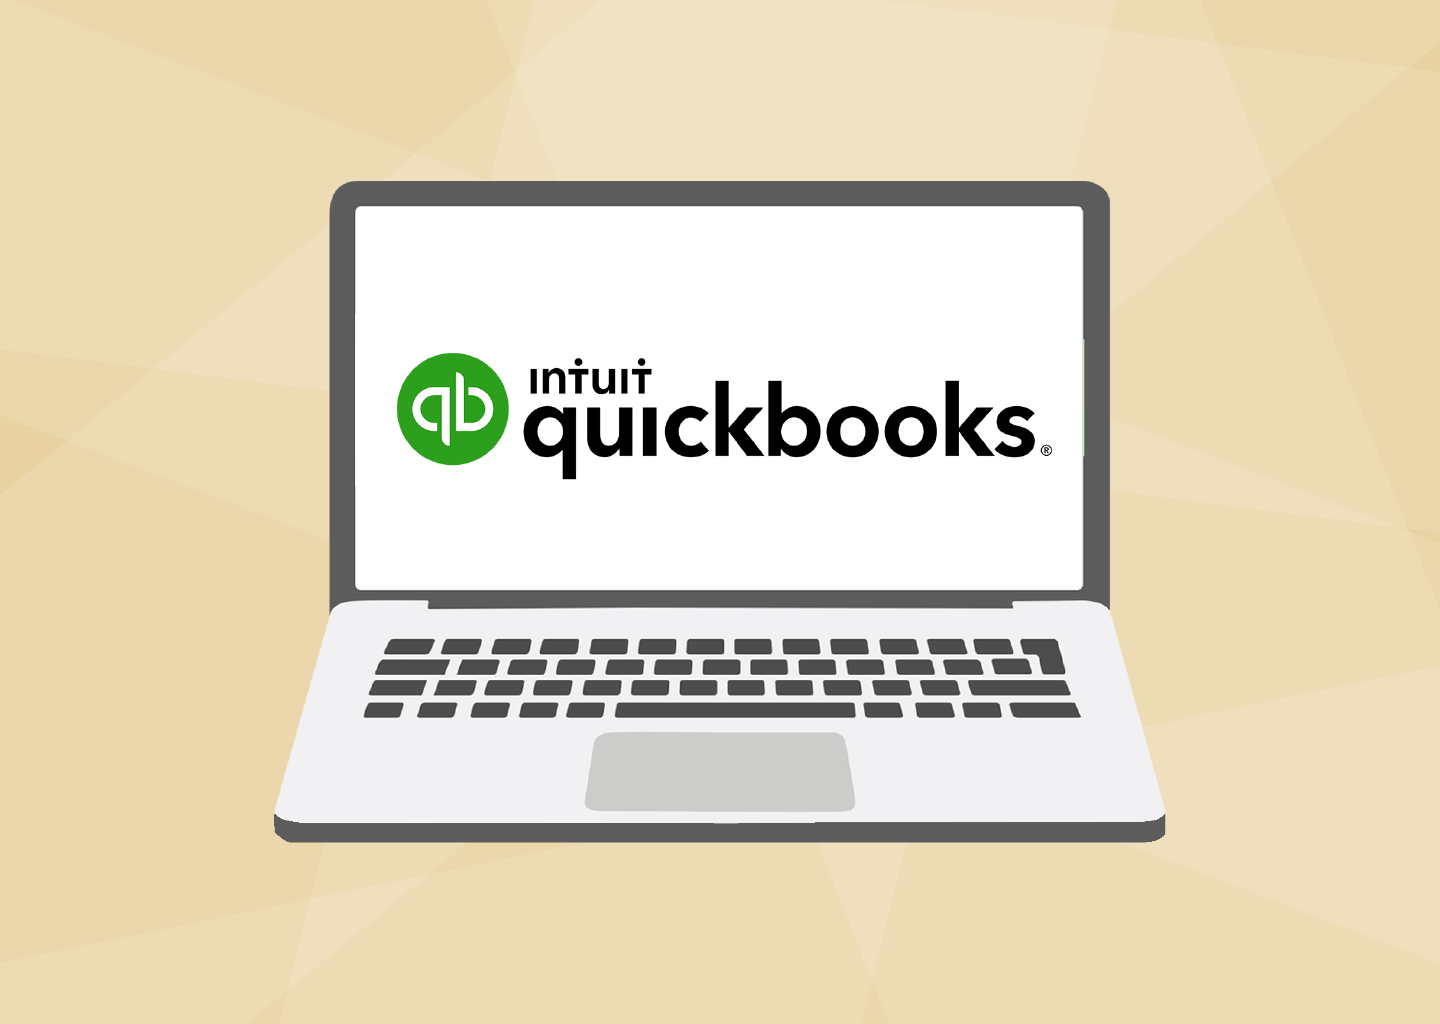 כל מה שאתה צריך לדעת על QuickBooks לעמותות